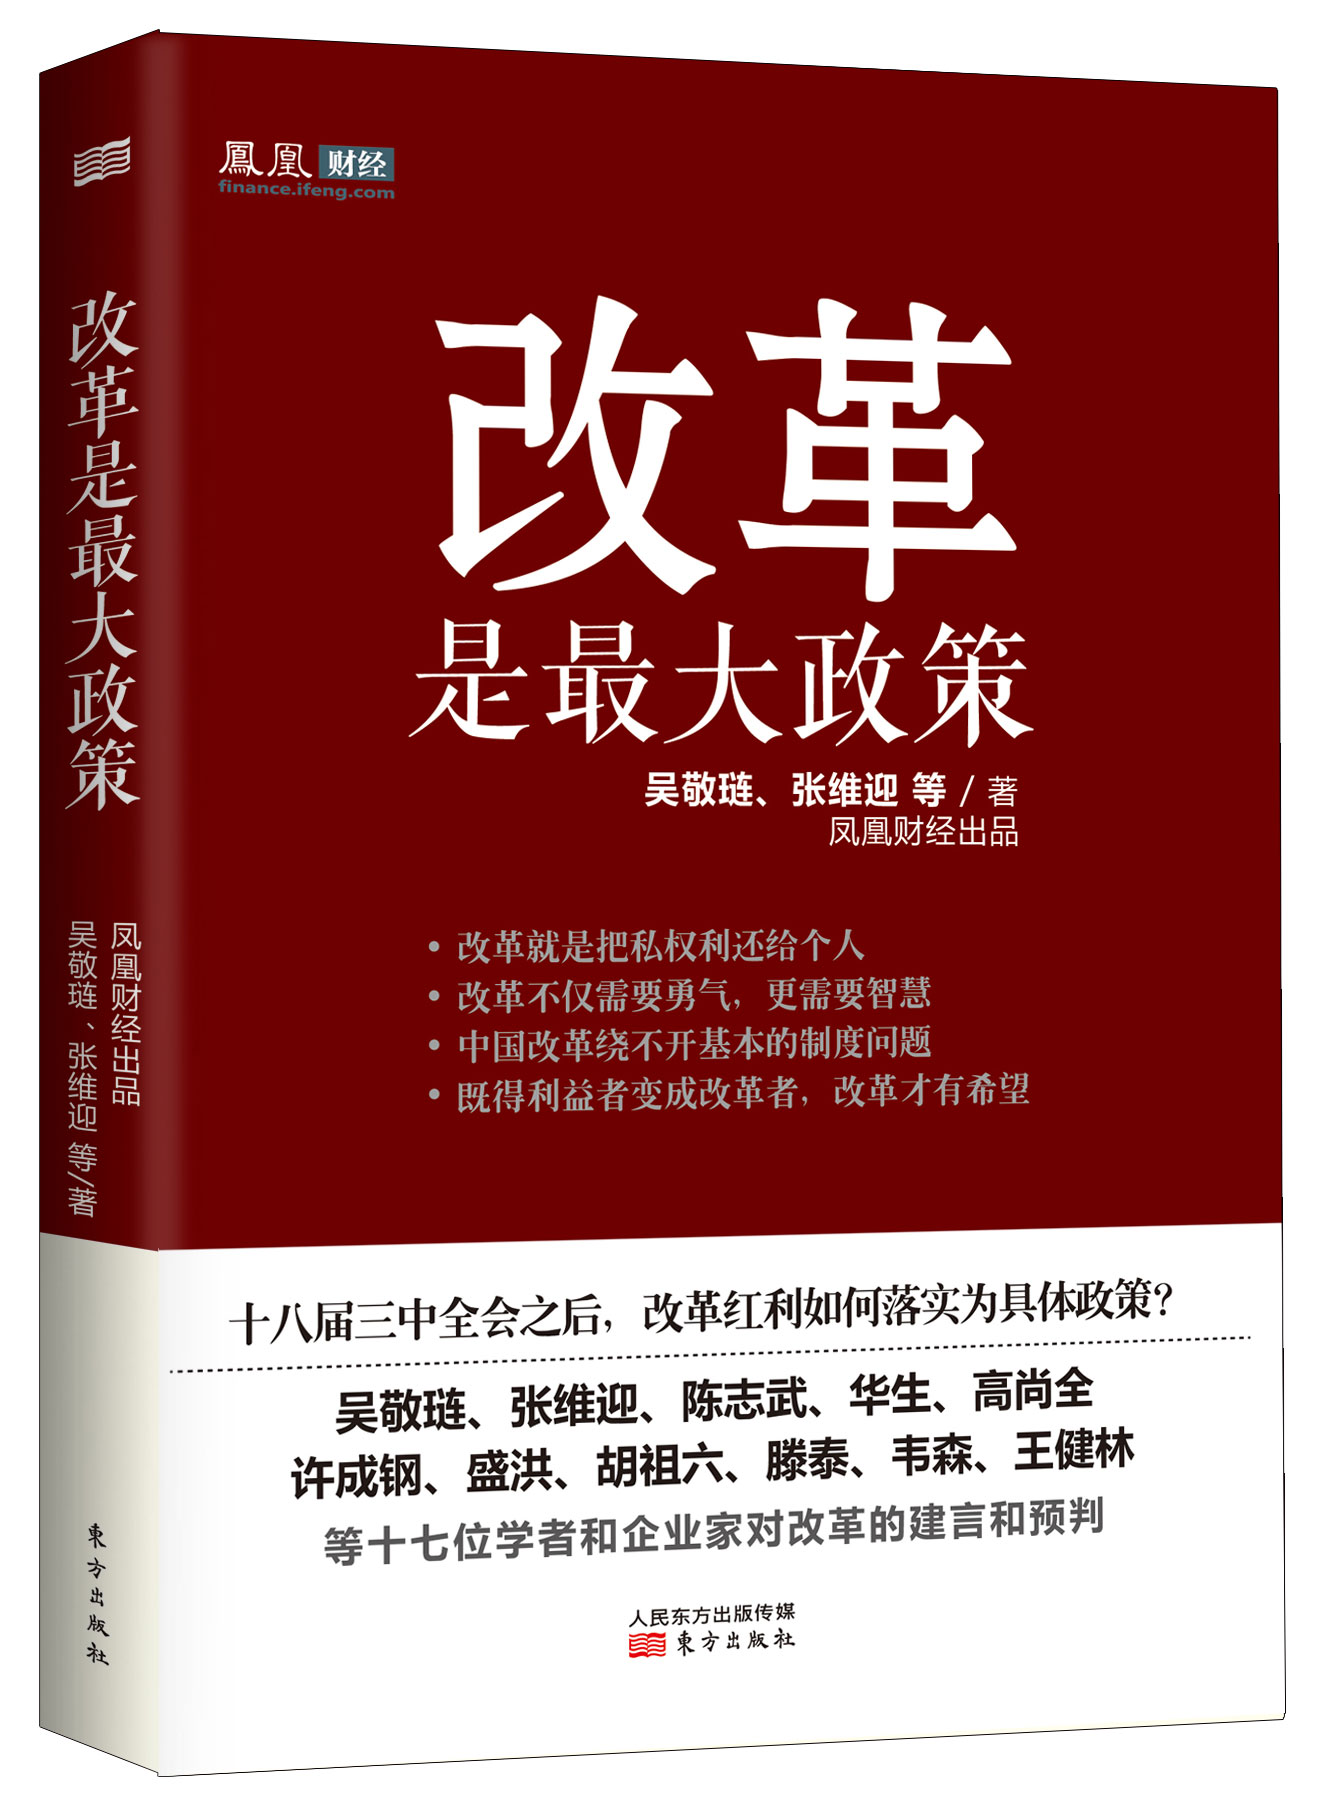 《改革是最大政策》出版 吴敬琏张维迎等建言